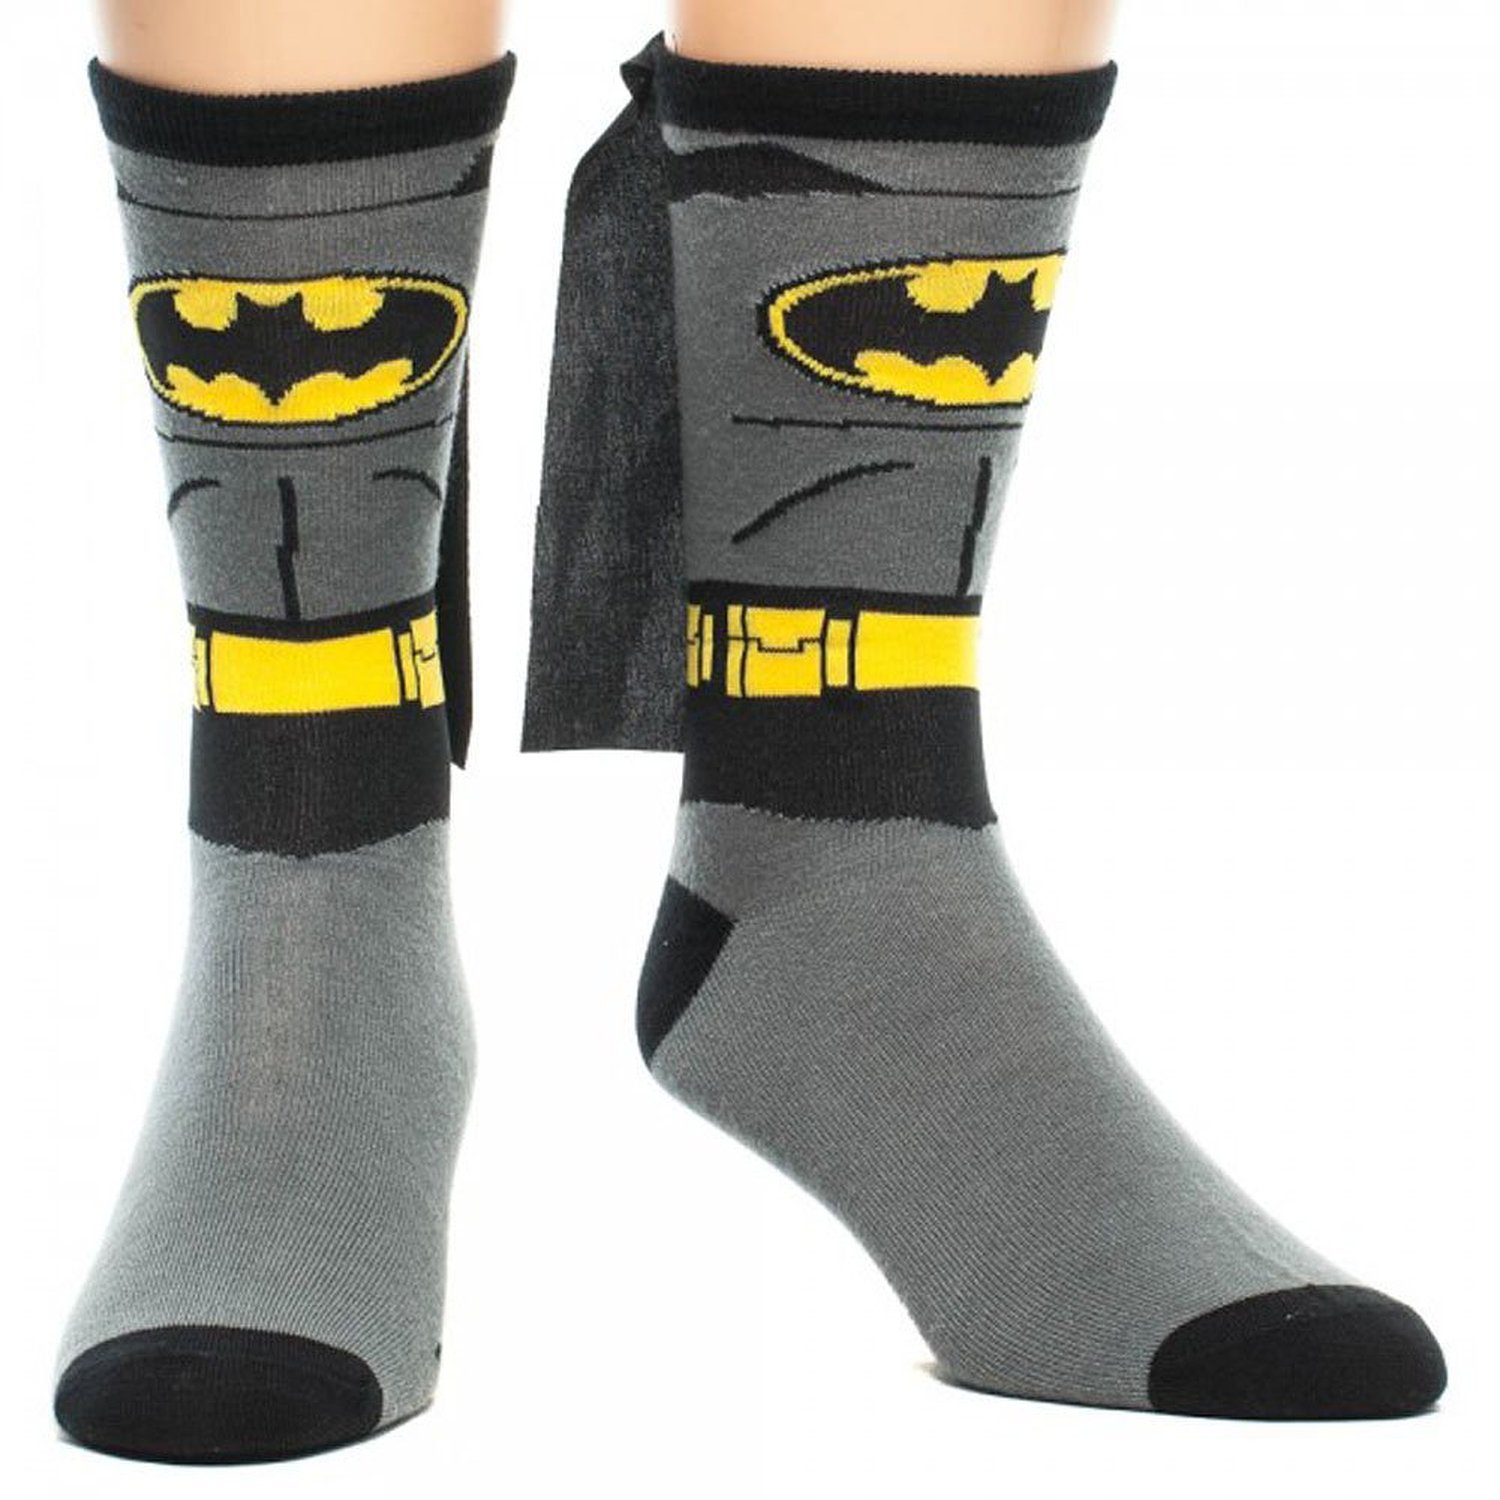 Varm och snygg med Bat-strumpor kompletta med mantlar!